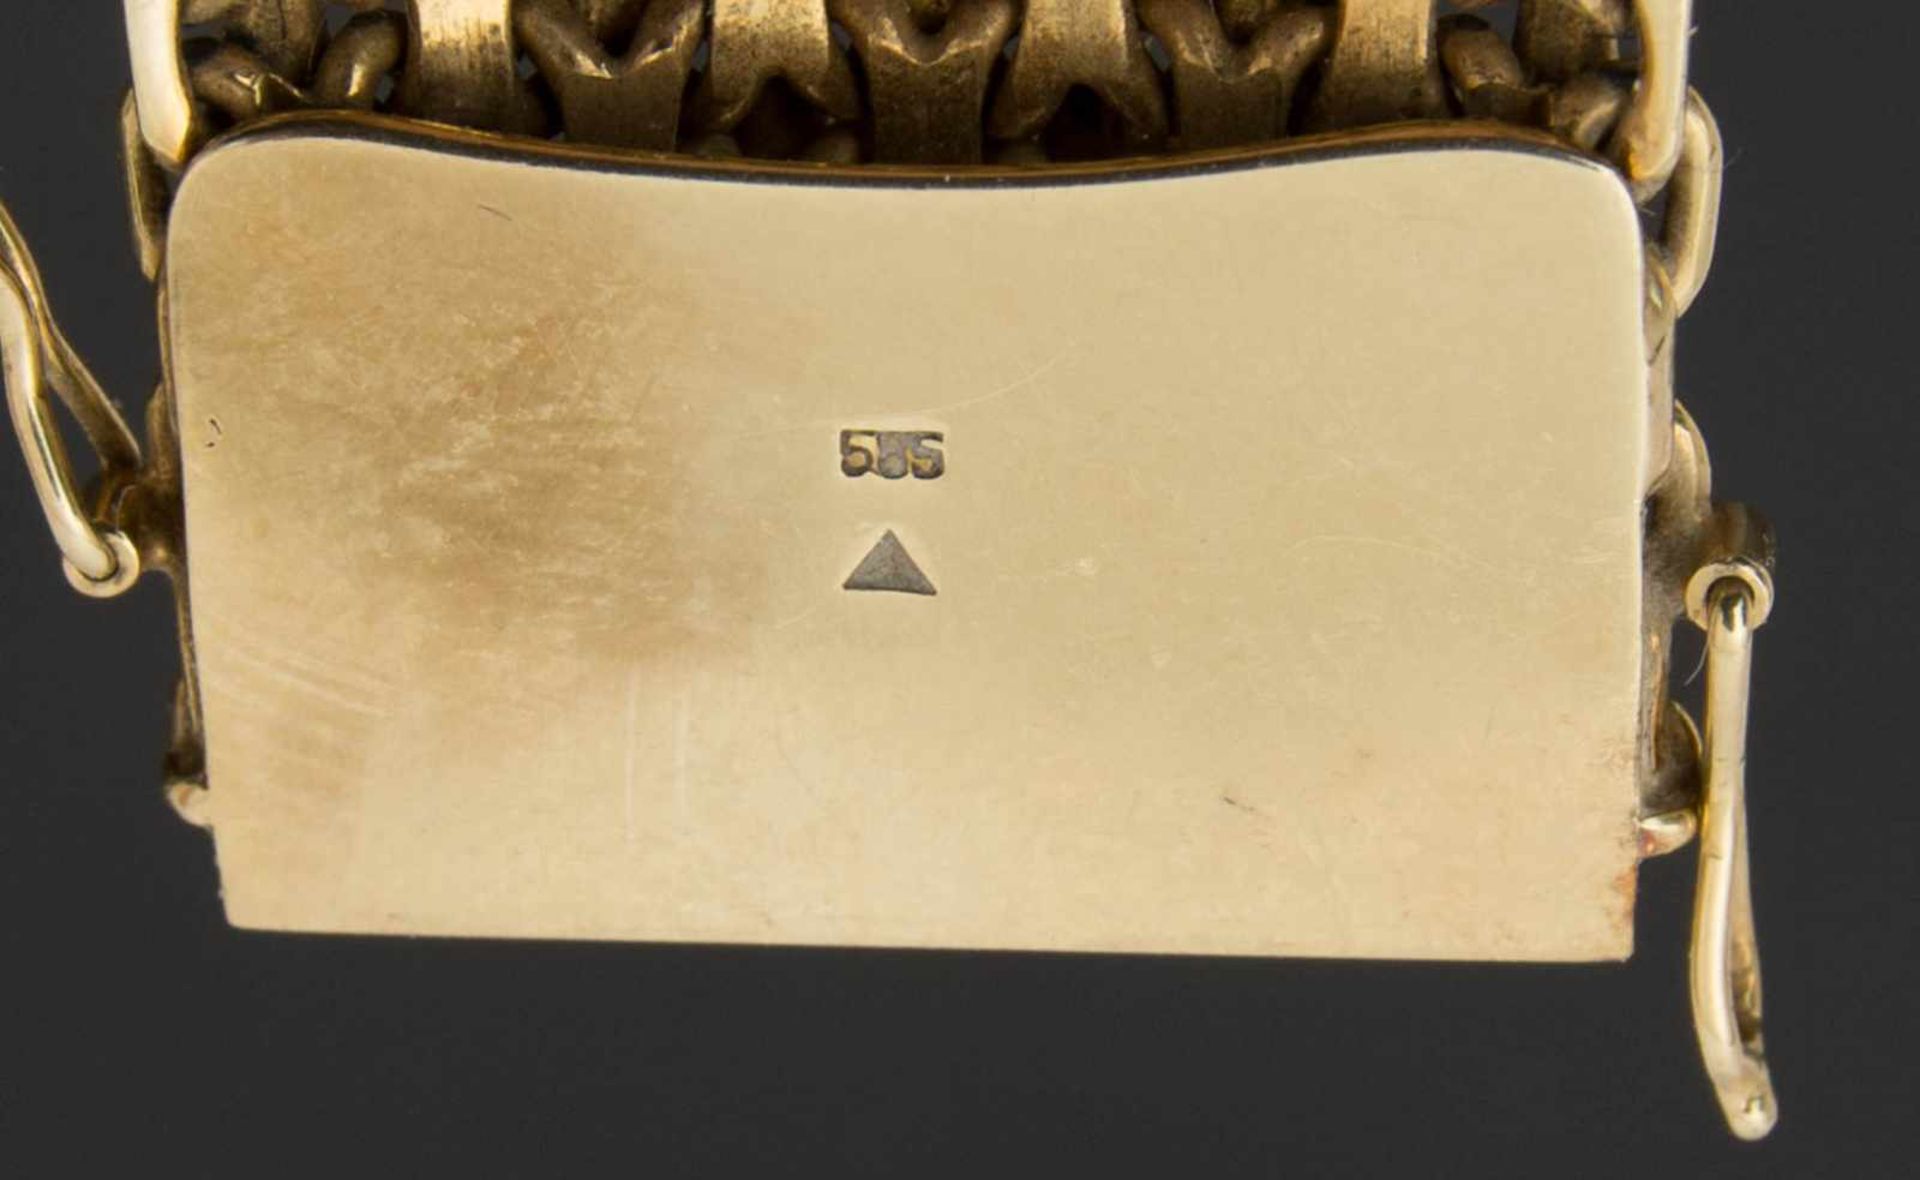 MASSIVES GLIEDERARMBAND, 14k Gelbgold14k Gelbgold Gliederarmband. Gewicht: 72 grammgestempelt - Bild 3 aus 3